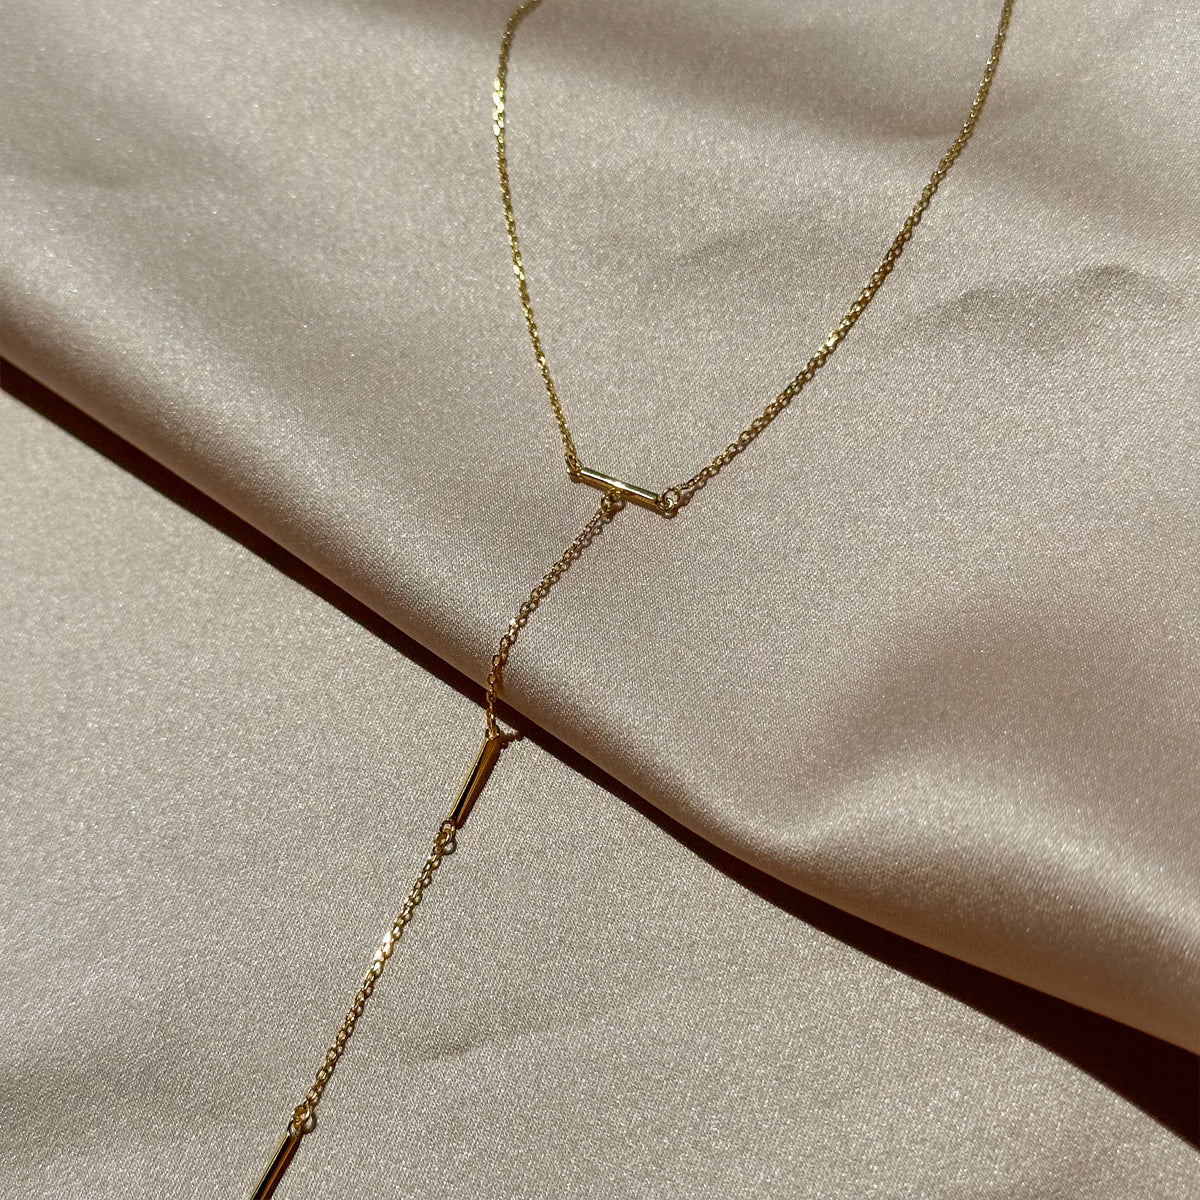 Levels Vermeil Lariat Necklace | Gold Vermeil | Product Image | Uncommon James